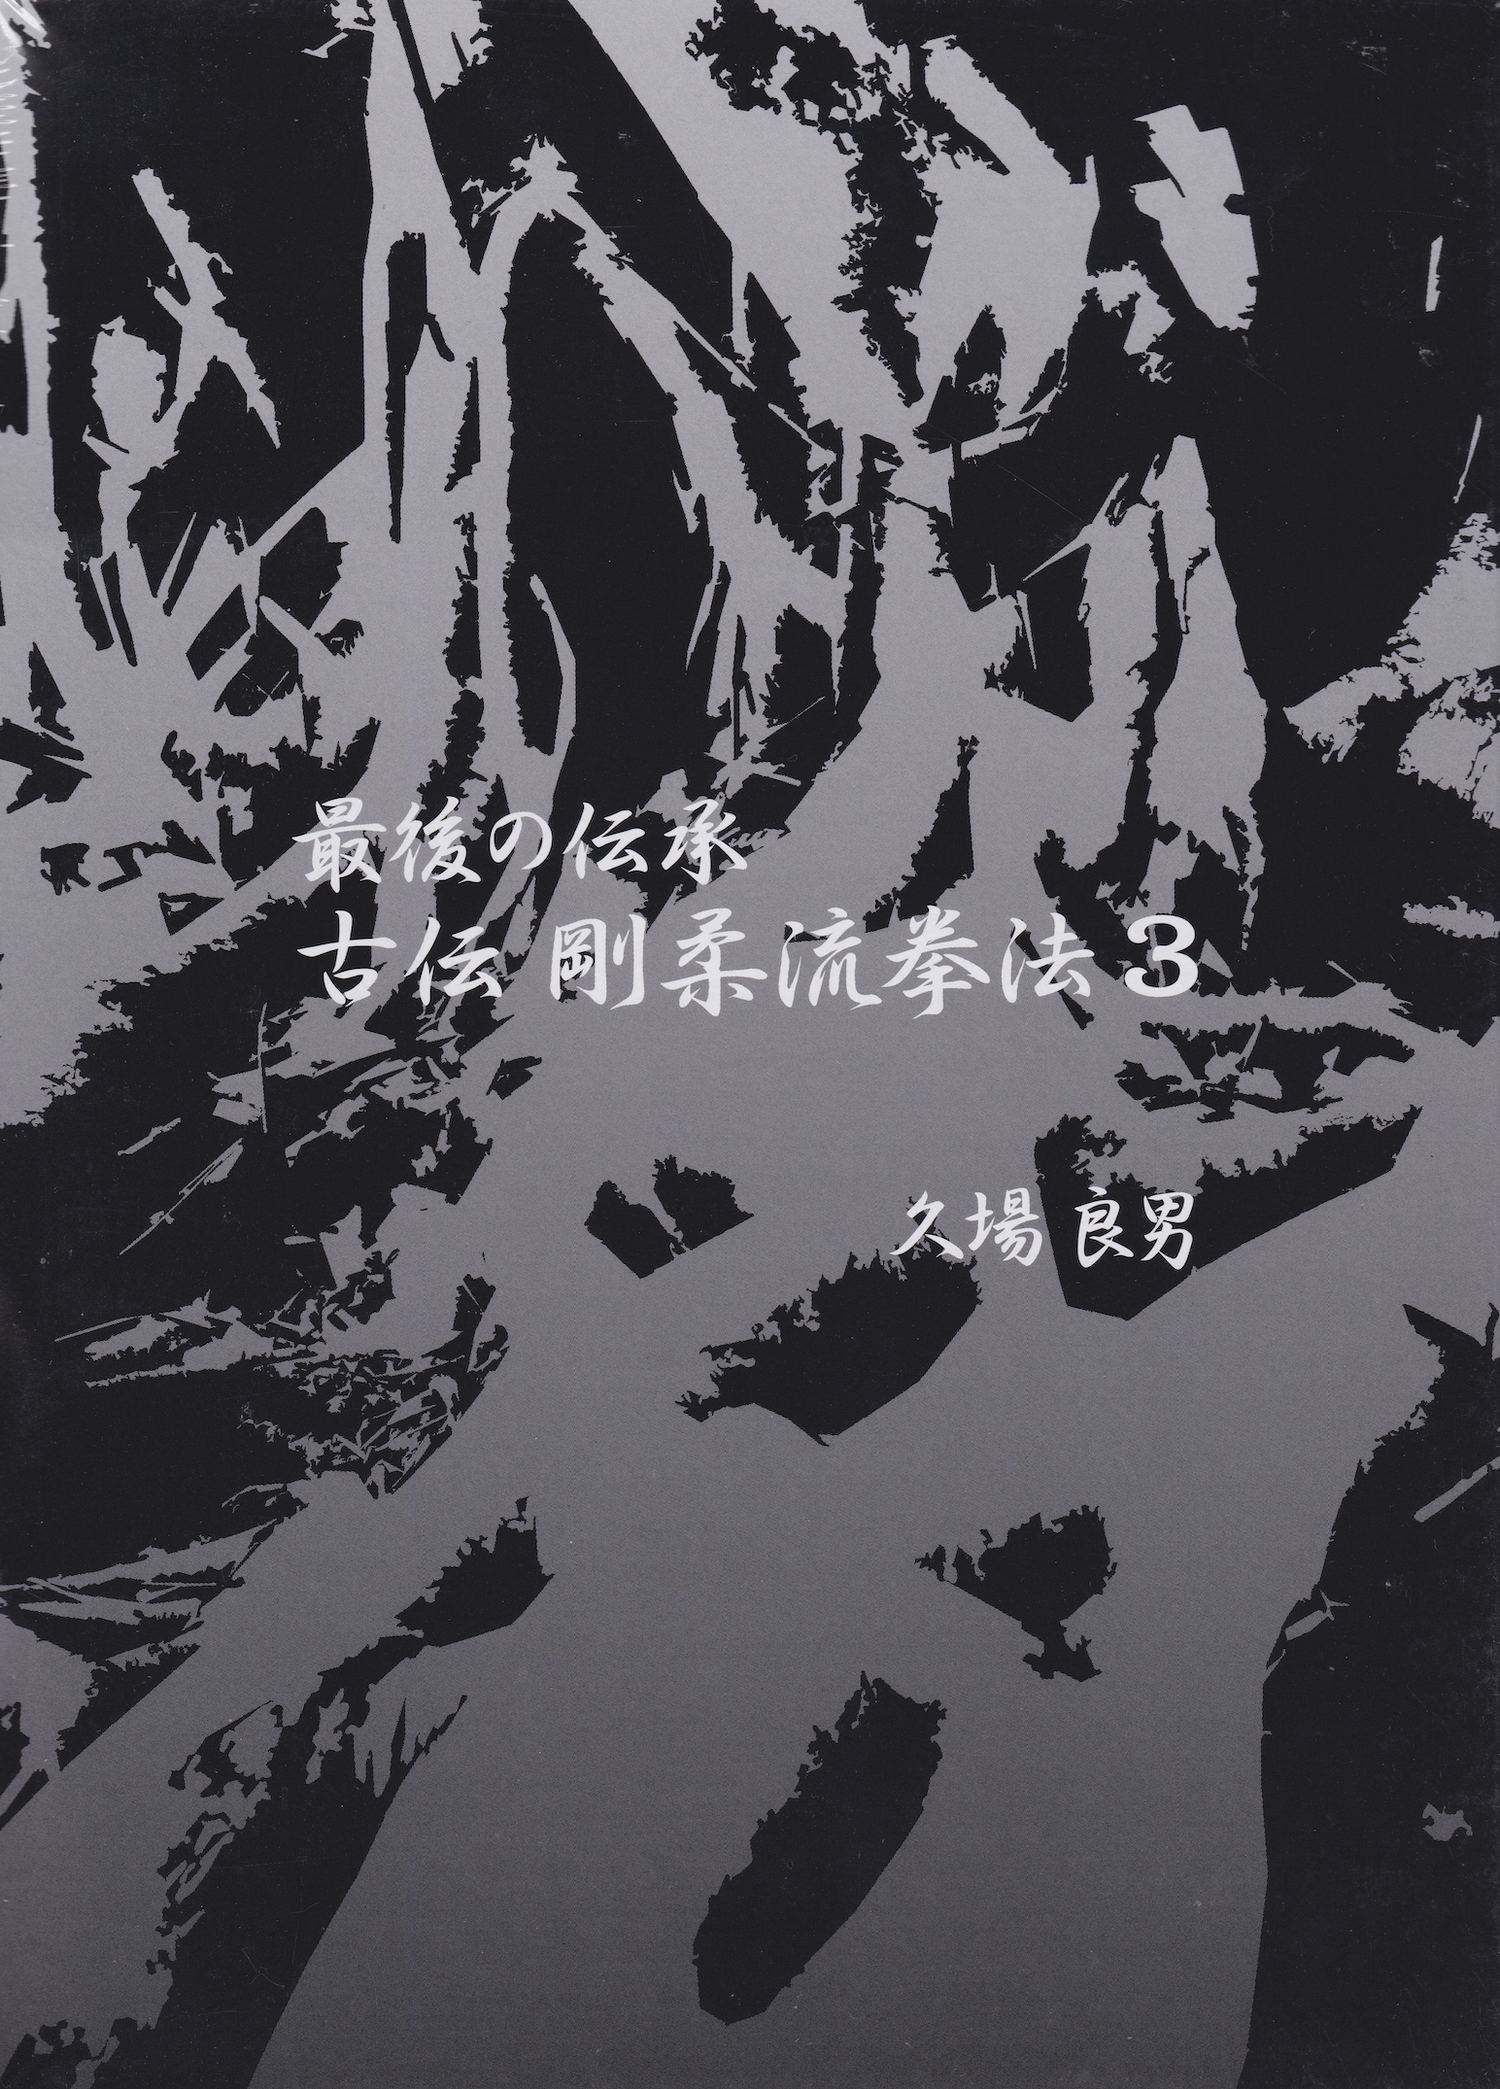 Lógica clásica del último libro y DVD tradicional de Goju-ryu Kempo Vol 3 